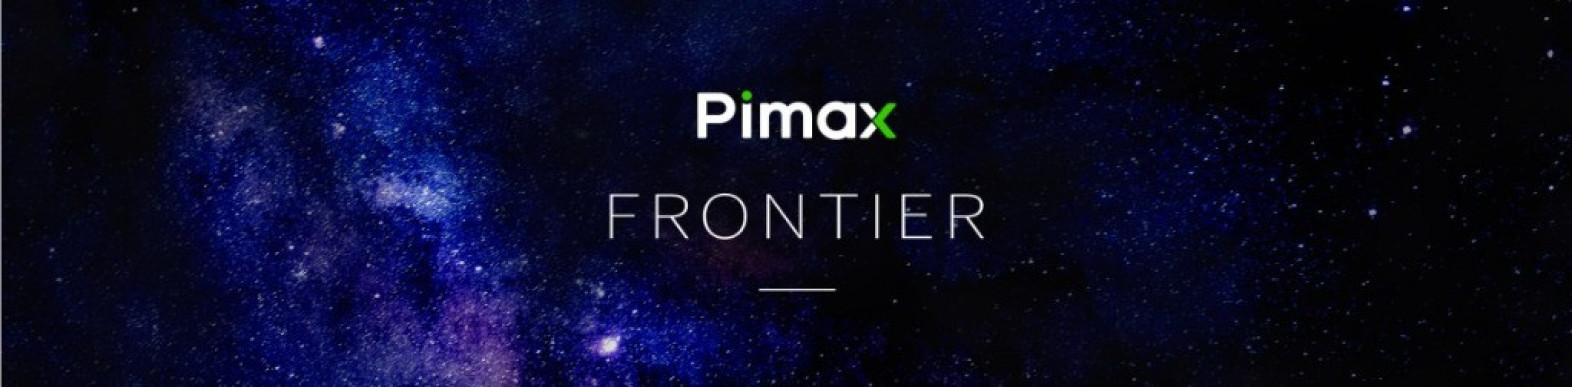 Pimax también celebrará un evento en octubre para presentar un nuevo producto